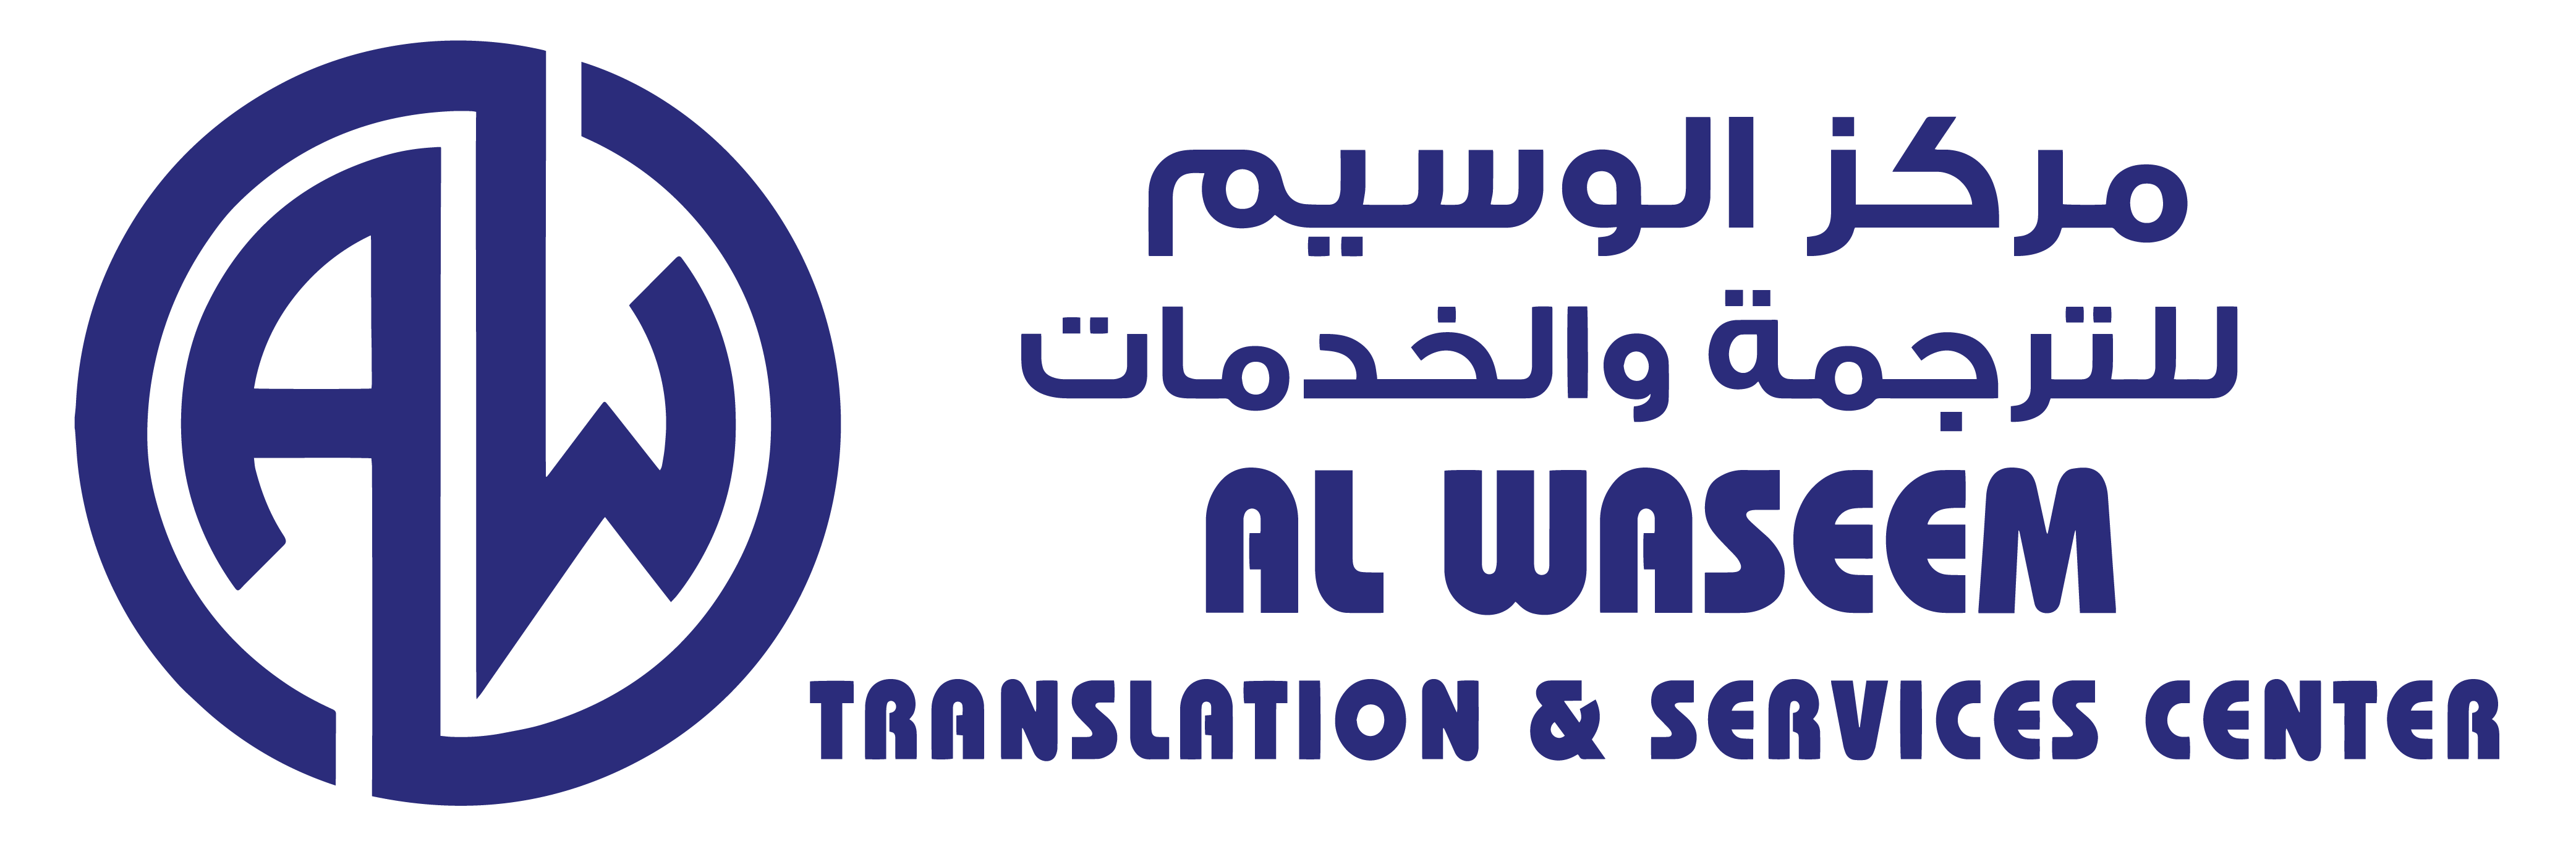 Al Waseem Translation